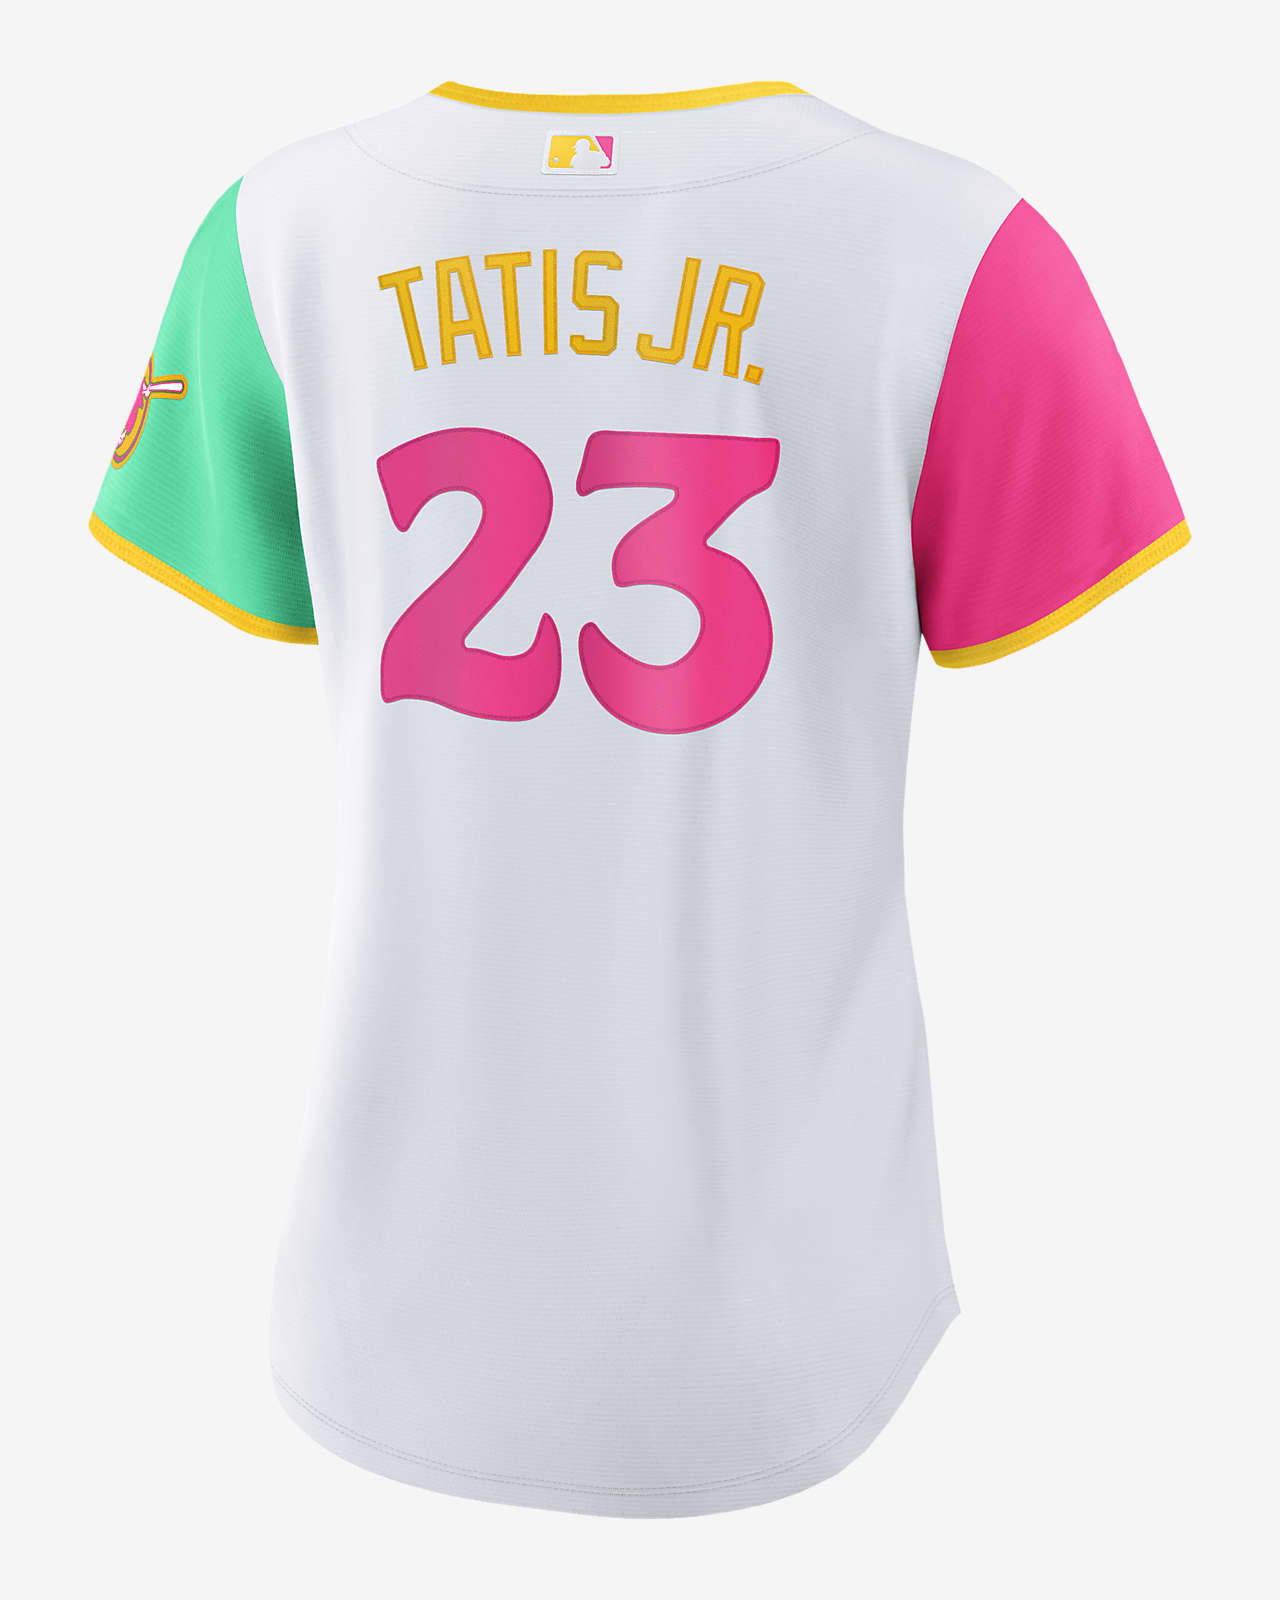 tatis youth jersey